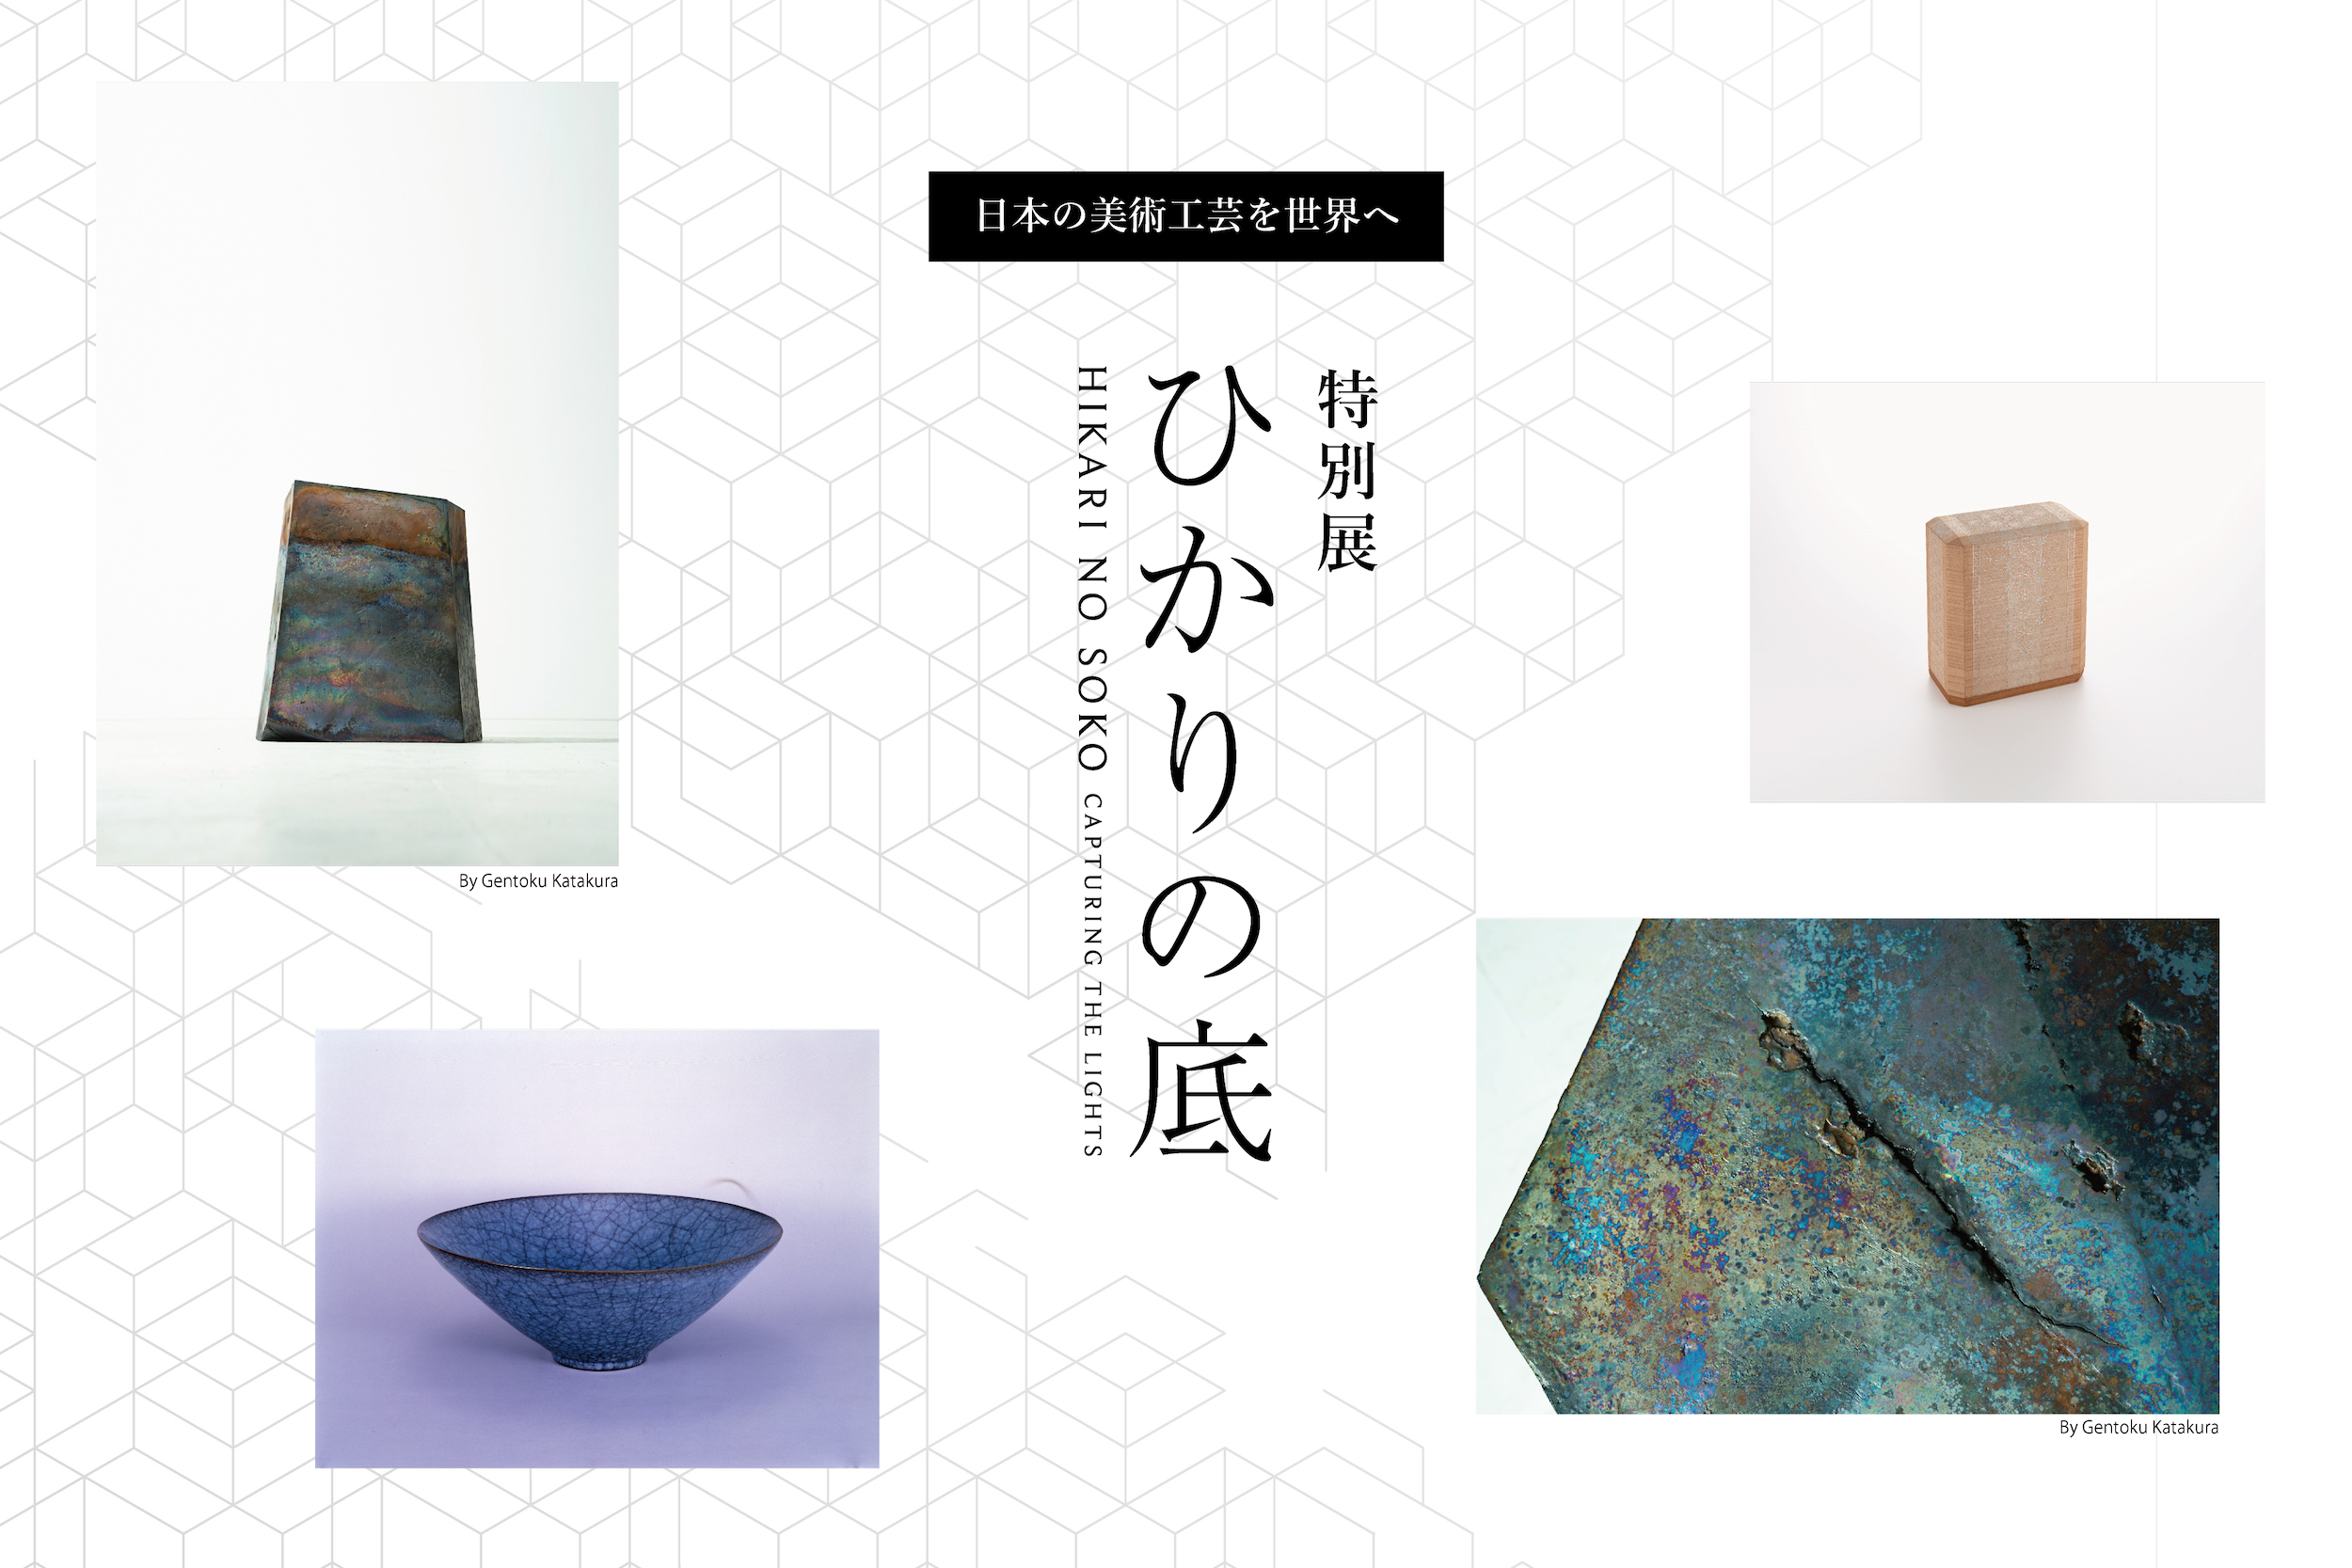 日本の美術工芸を世界へ、特別展『ひかりの底』開催 | 注目の展覧会・イベント | インサイト | KOGEI STANDARD |  日本工芸のオンラインメディア